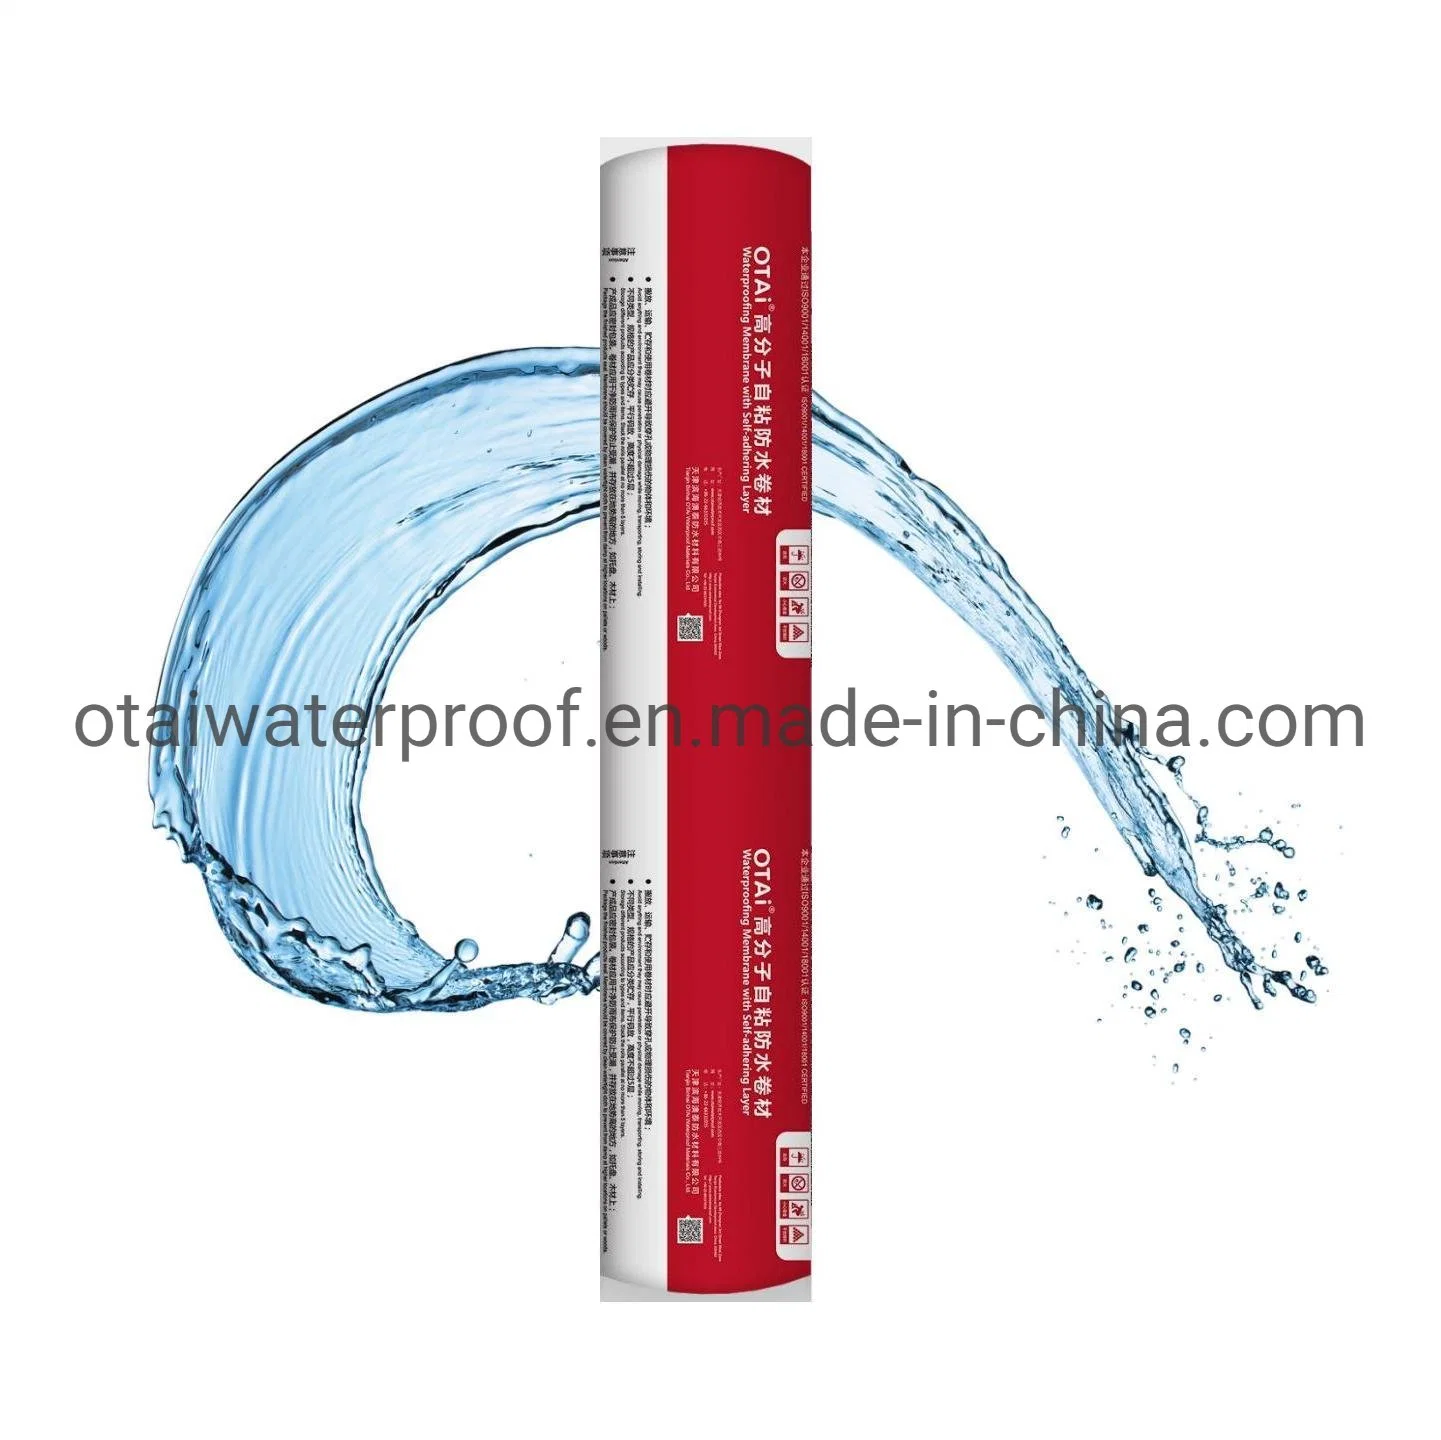 HDPE Plastic Waterproof Membrane Building Waterproofing Material